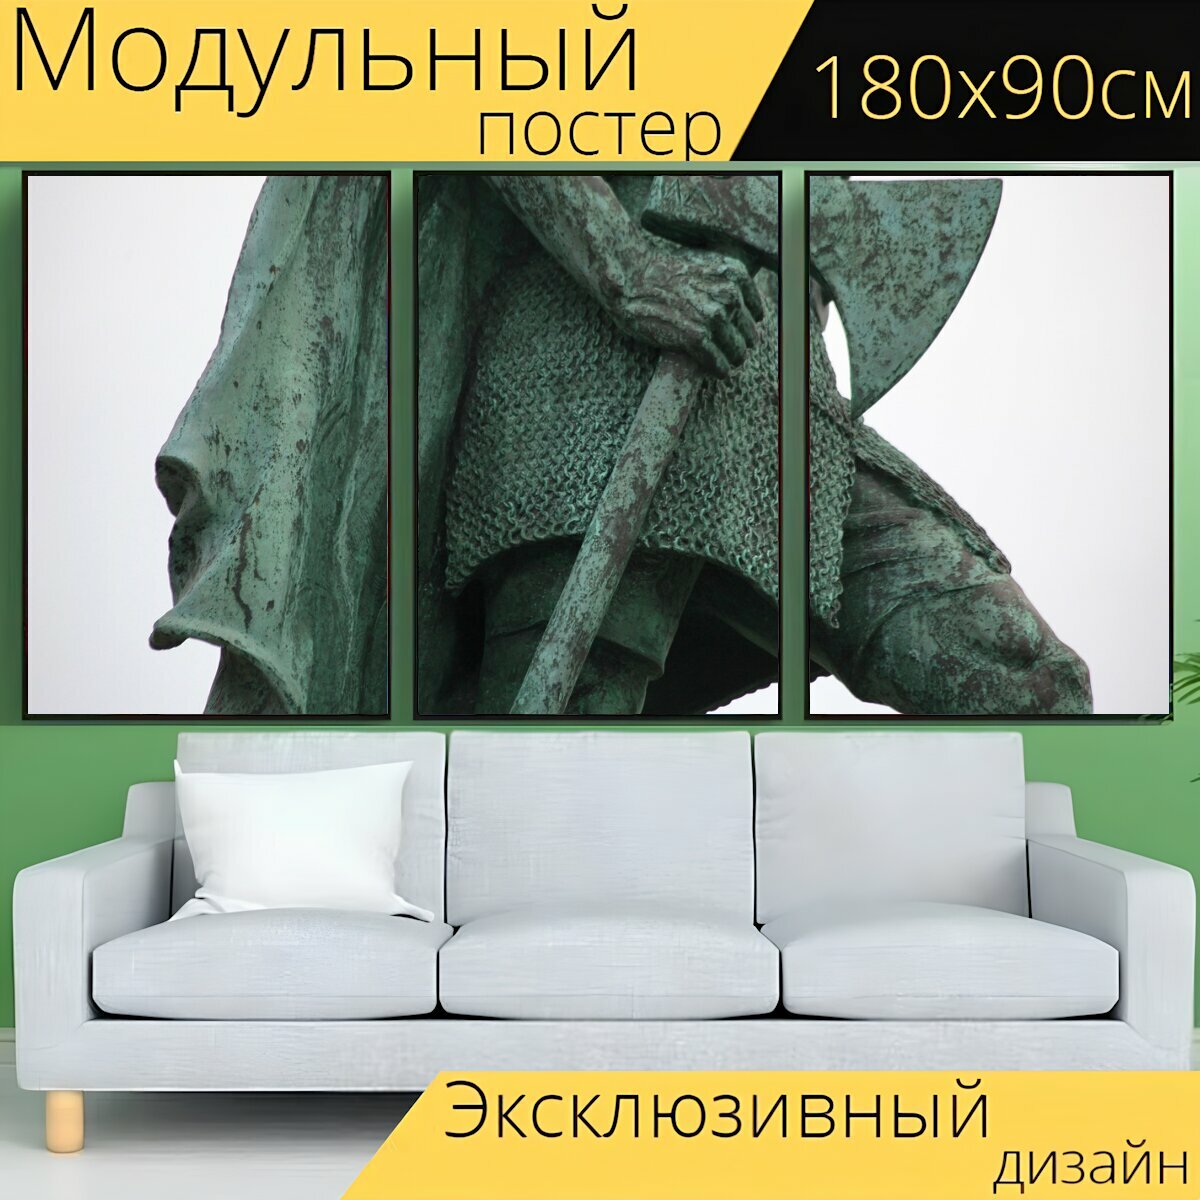 Модульный постер "Статуя, топор, викинги" 180 x 90 см. для интерьера